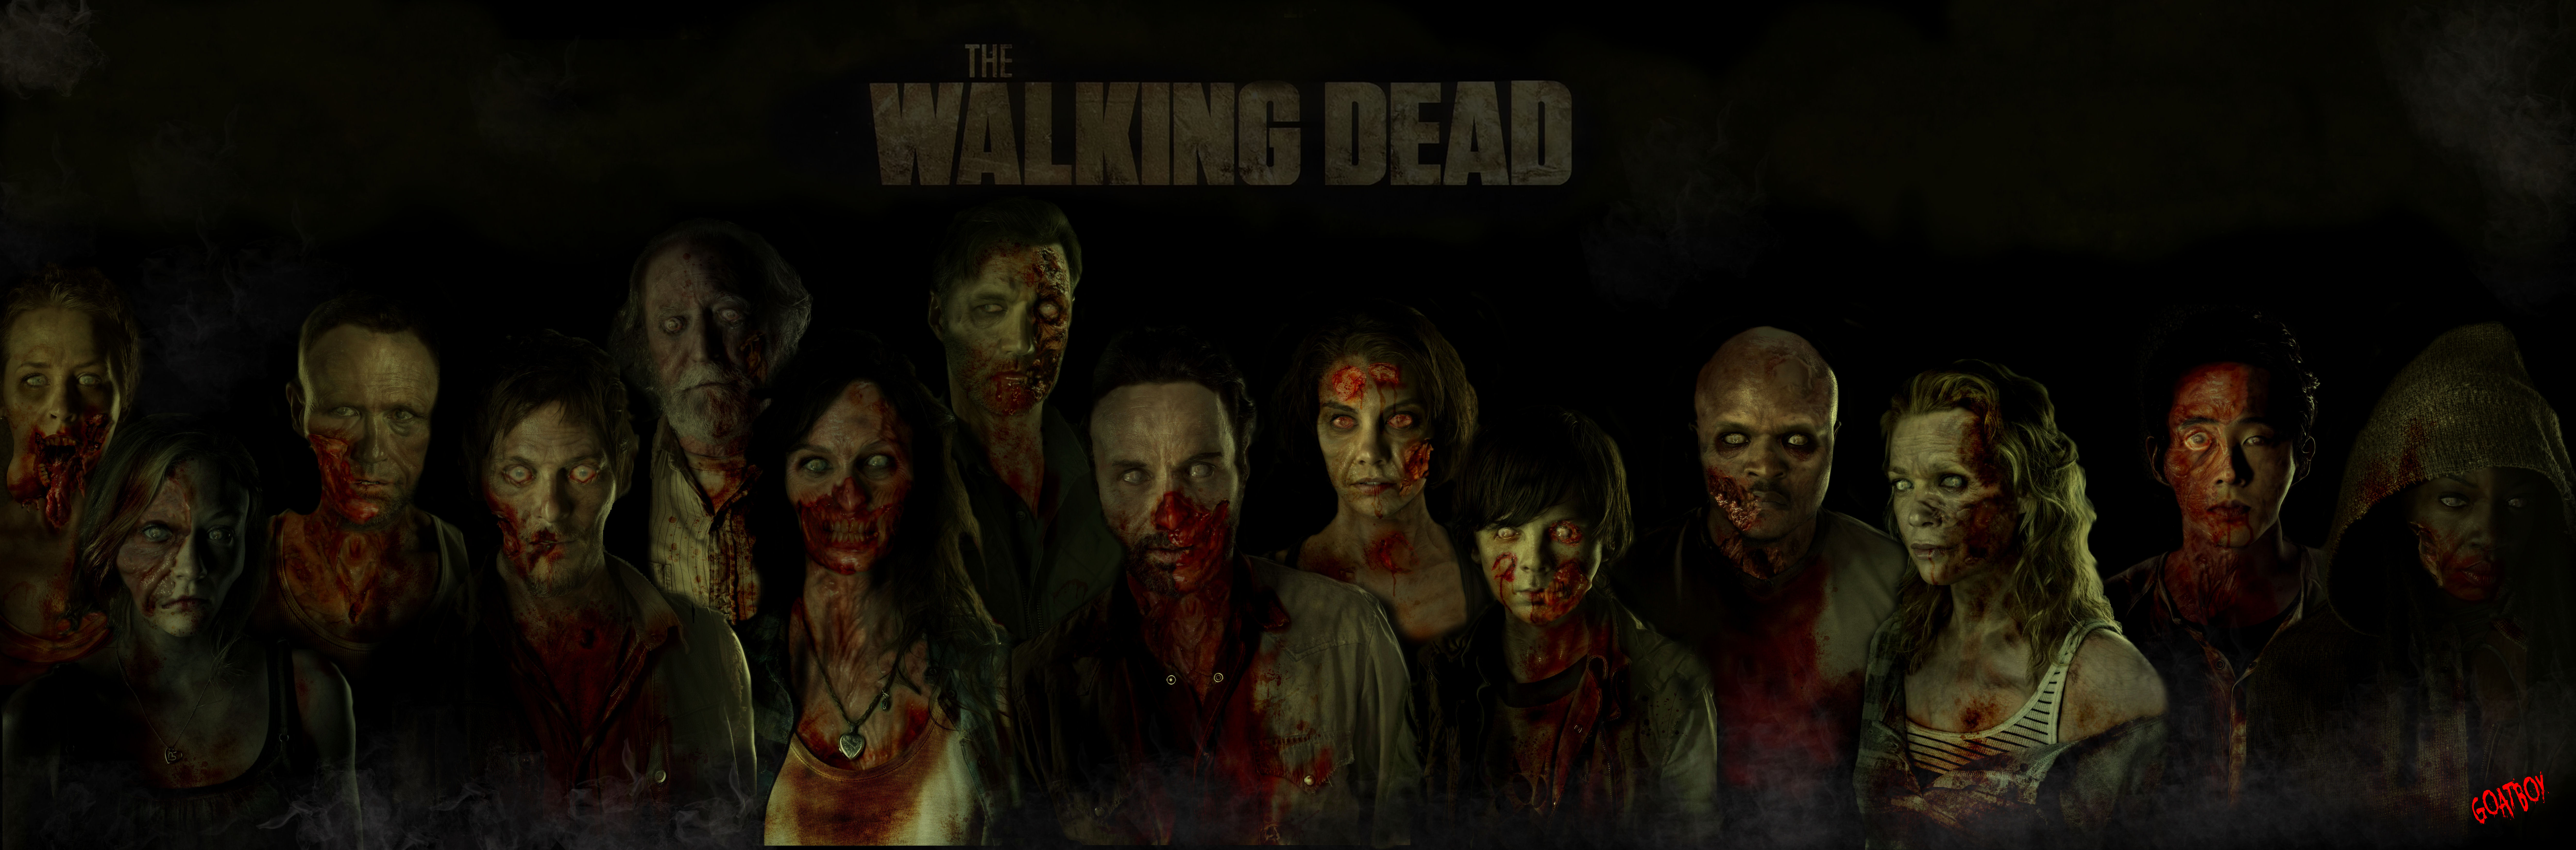 The Walking Dead Zombie Cast Wallpaper - Walking Dead Wallpaper Zombies - HD Wallpaper 